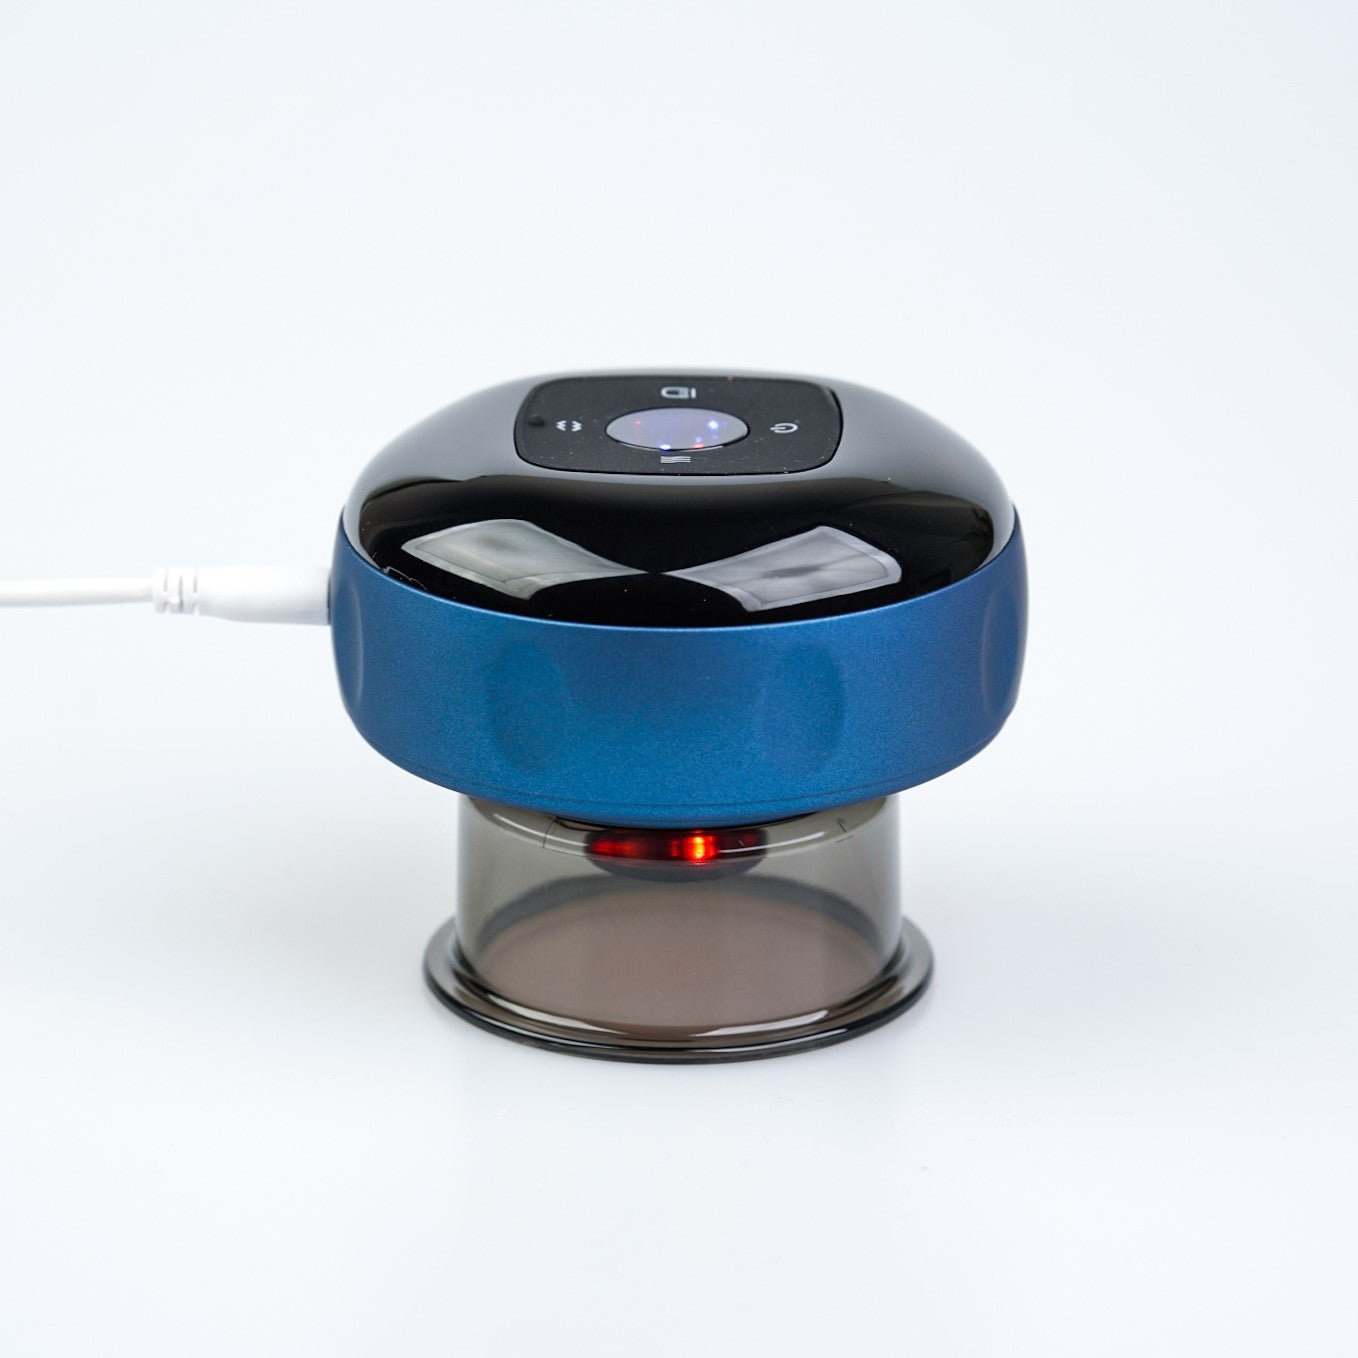 En metallisk blå Smart Cup Basic med en blank finish, med et kontrolpanel på toppen og et rødt lys oplyst i bunden, forbundet med et hvidt kabel mod en ren nordisk hvid baggrund. perfekt for en spa oplevelse